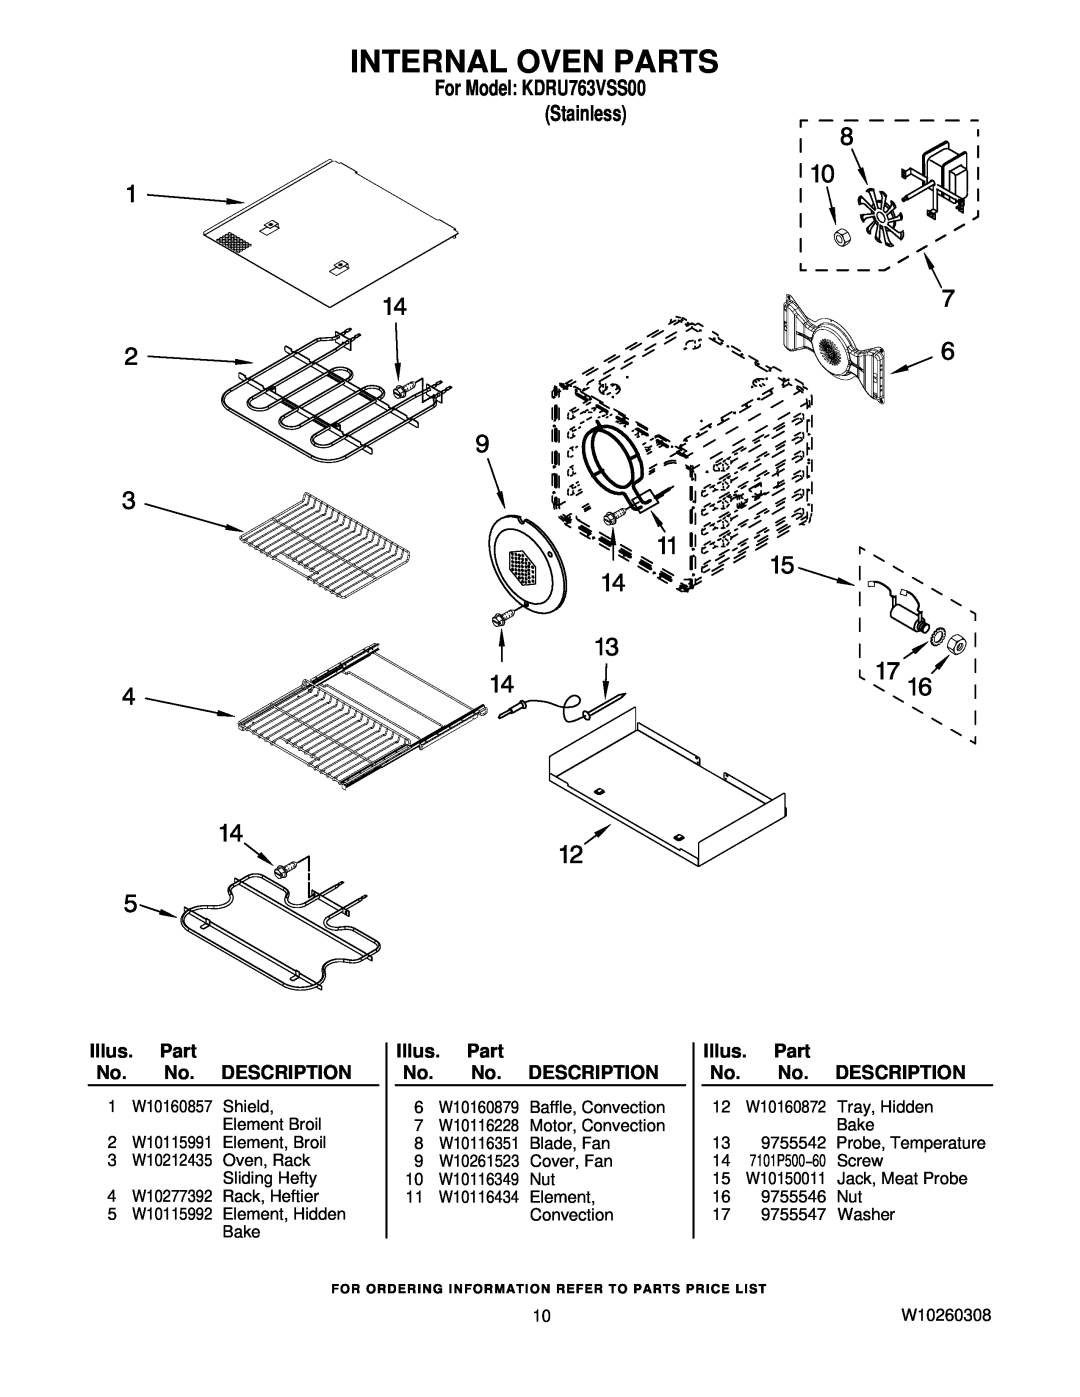 KitchenAid KDRU763VSS00 manual Internal Oven Parts, Illus. Part No. No. DESCRIPTION 